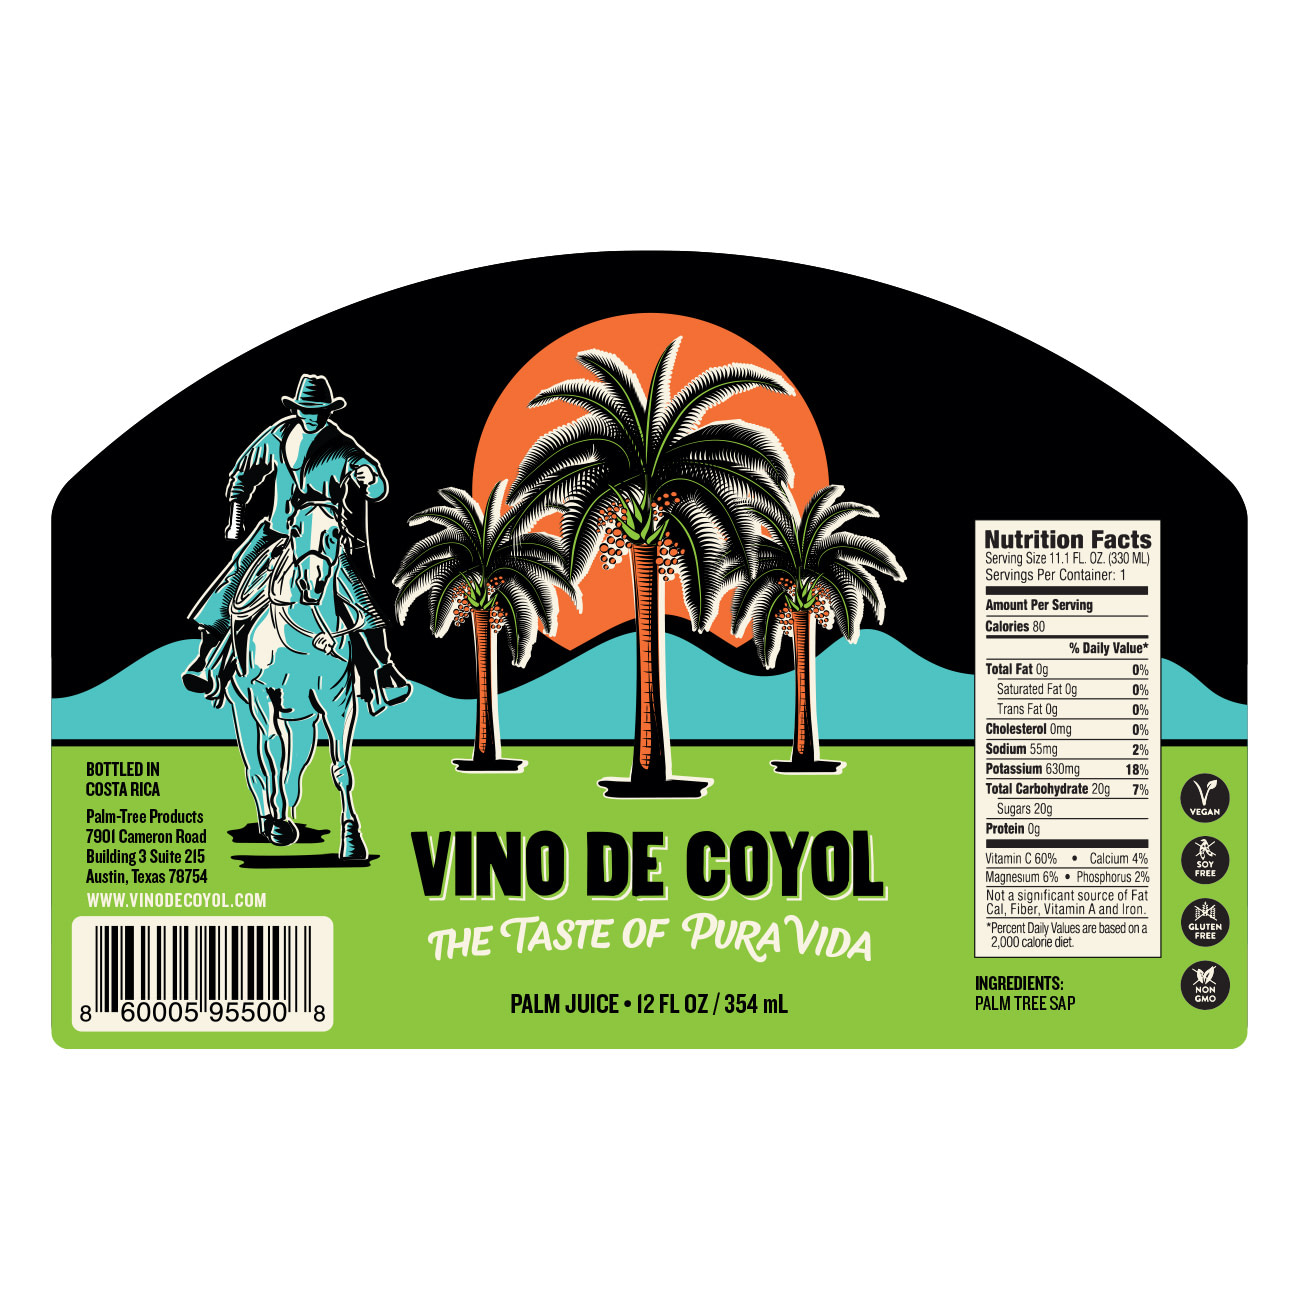 Vino de Coyol – The Taste of Pura Vida